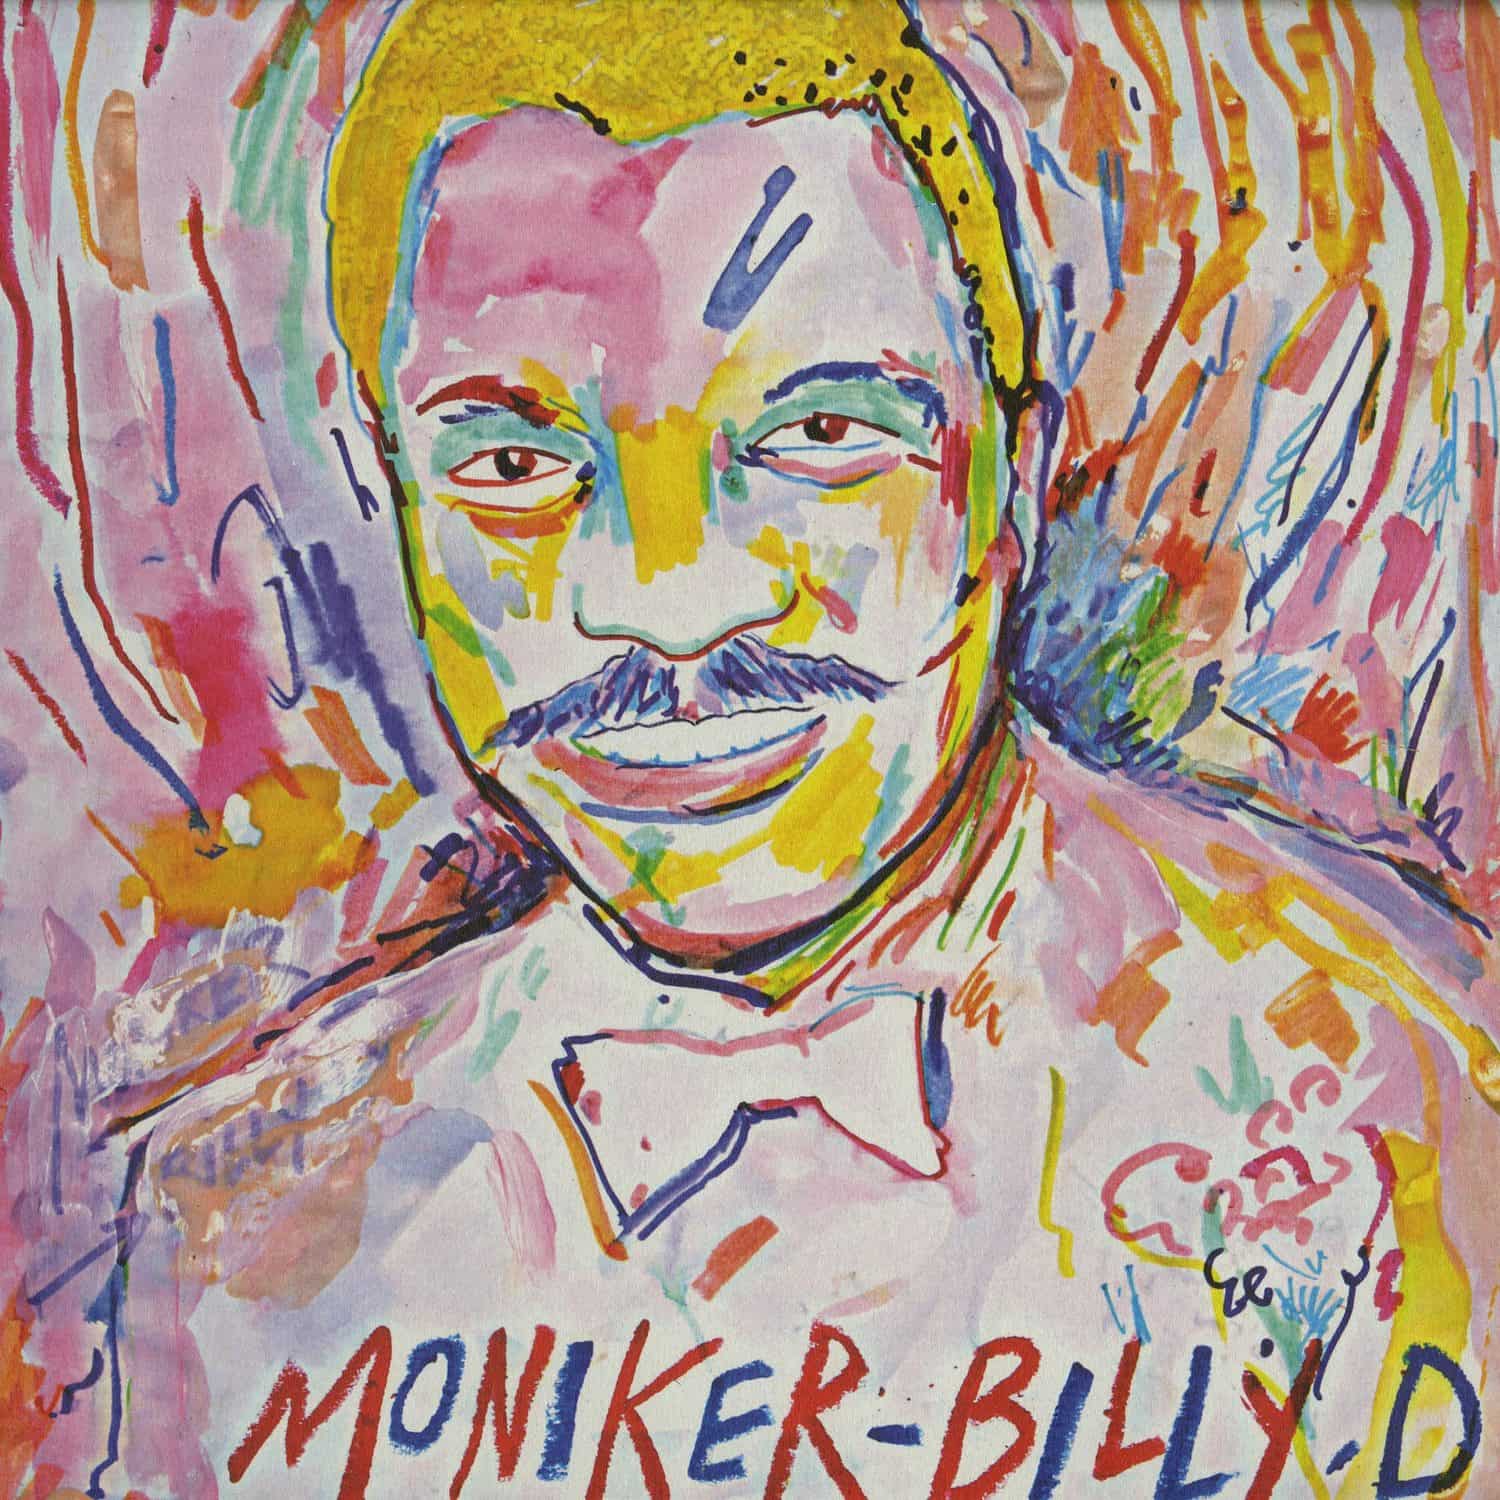 Moniker - BILLY D 